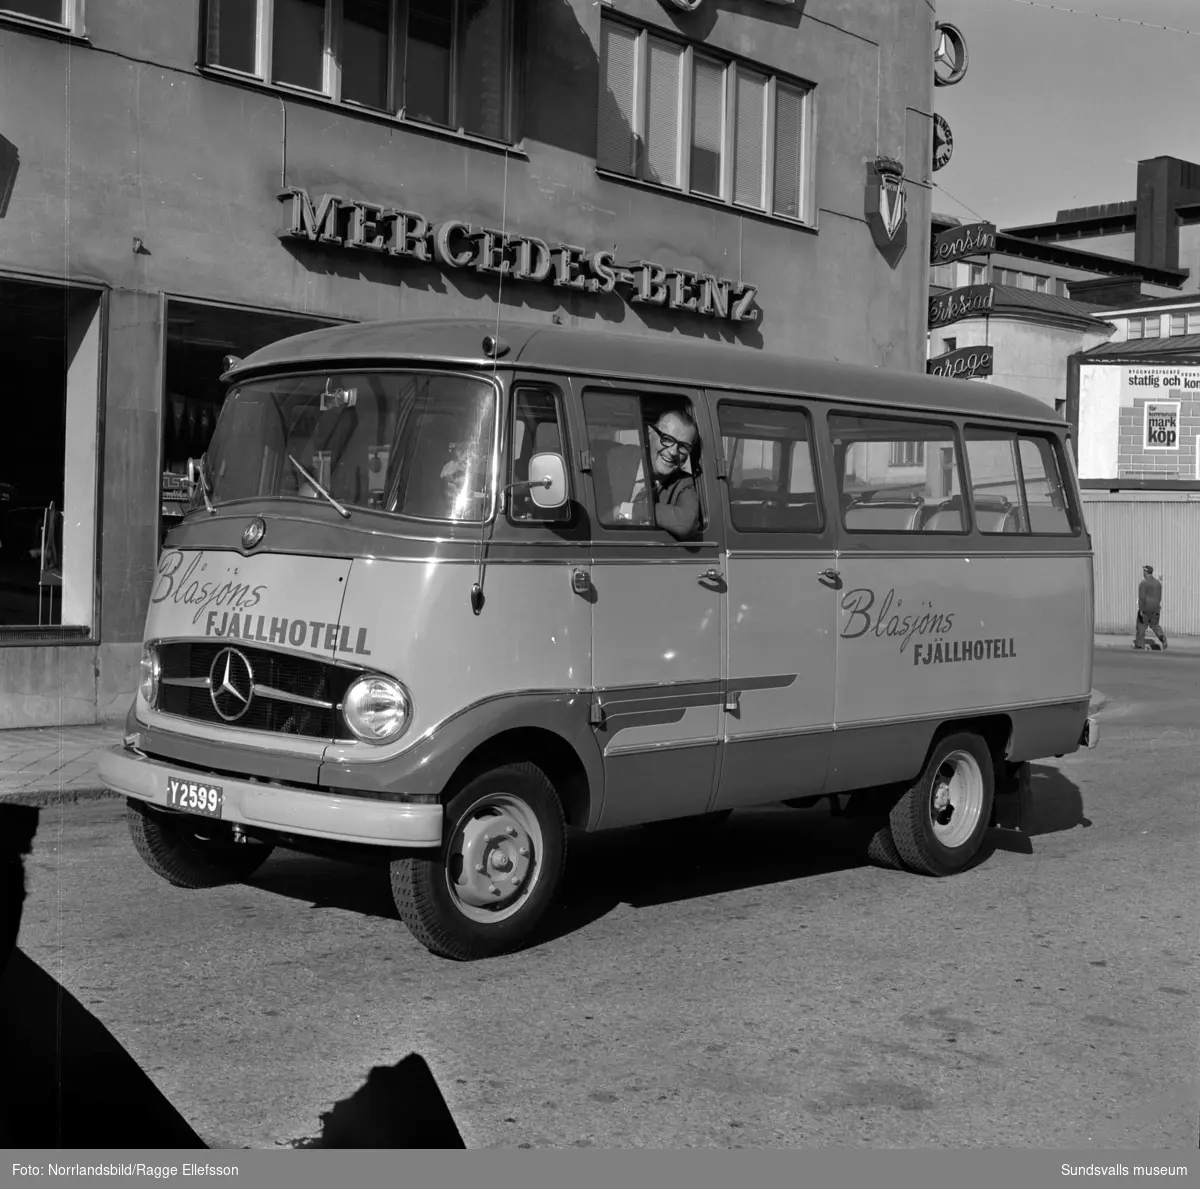 Philipssons bilfirma levererar en Mercedes minibuss till Blåsjöns fjällhotell.